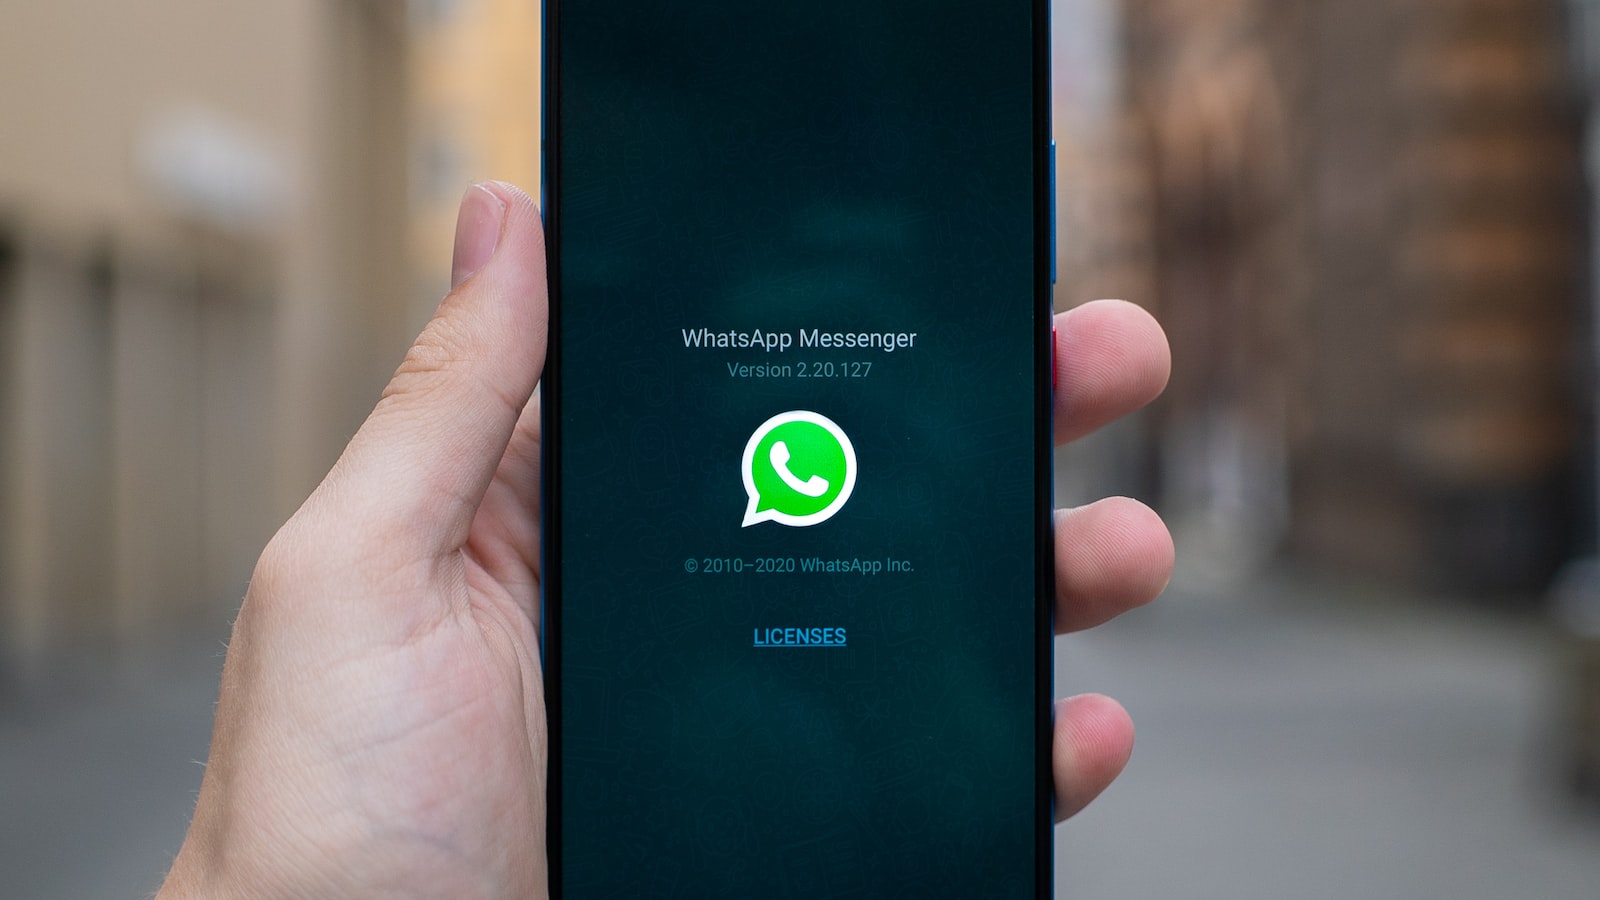 批发WhatsApp账号 | 批量获取私人信息 | 中性信息